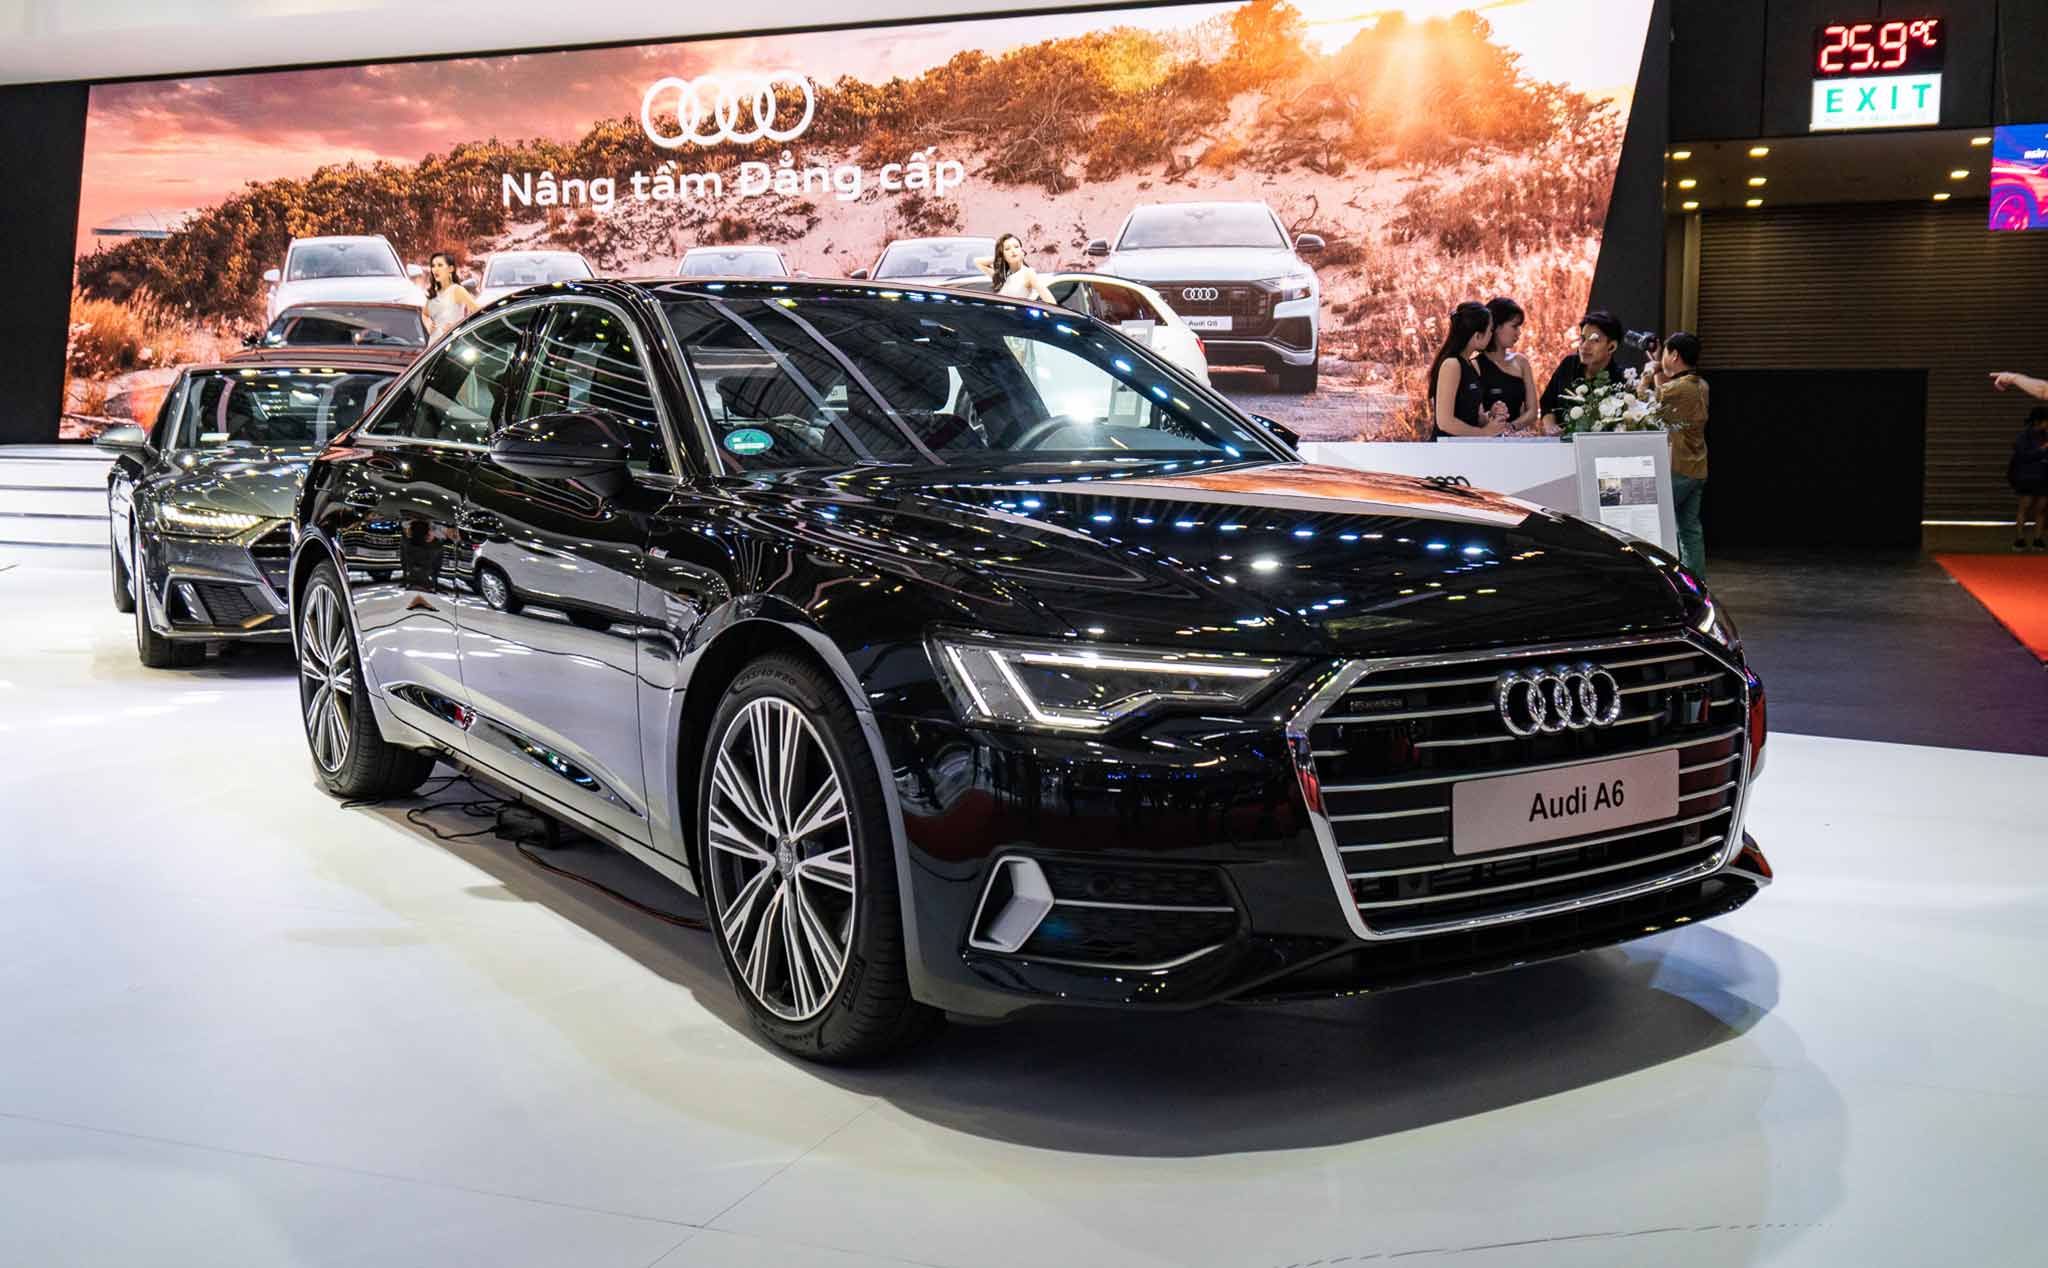 Trên tay Audi A6 thế hệ mới, giá khoảng 2,5 tỷ đồng